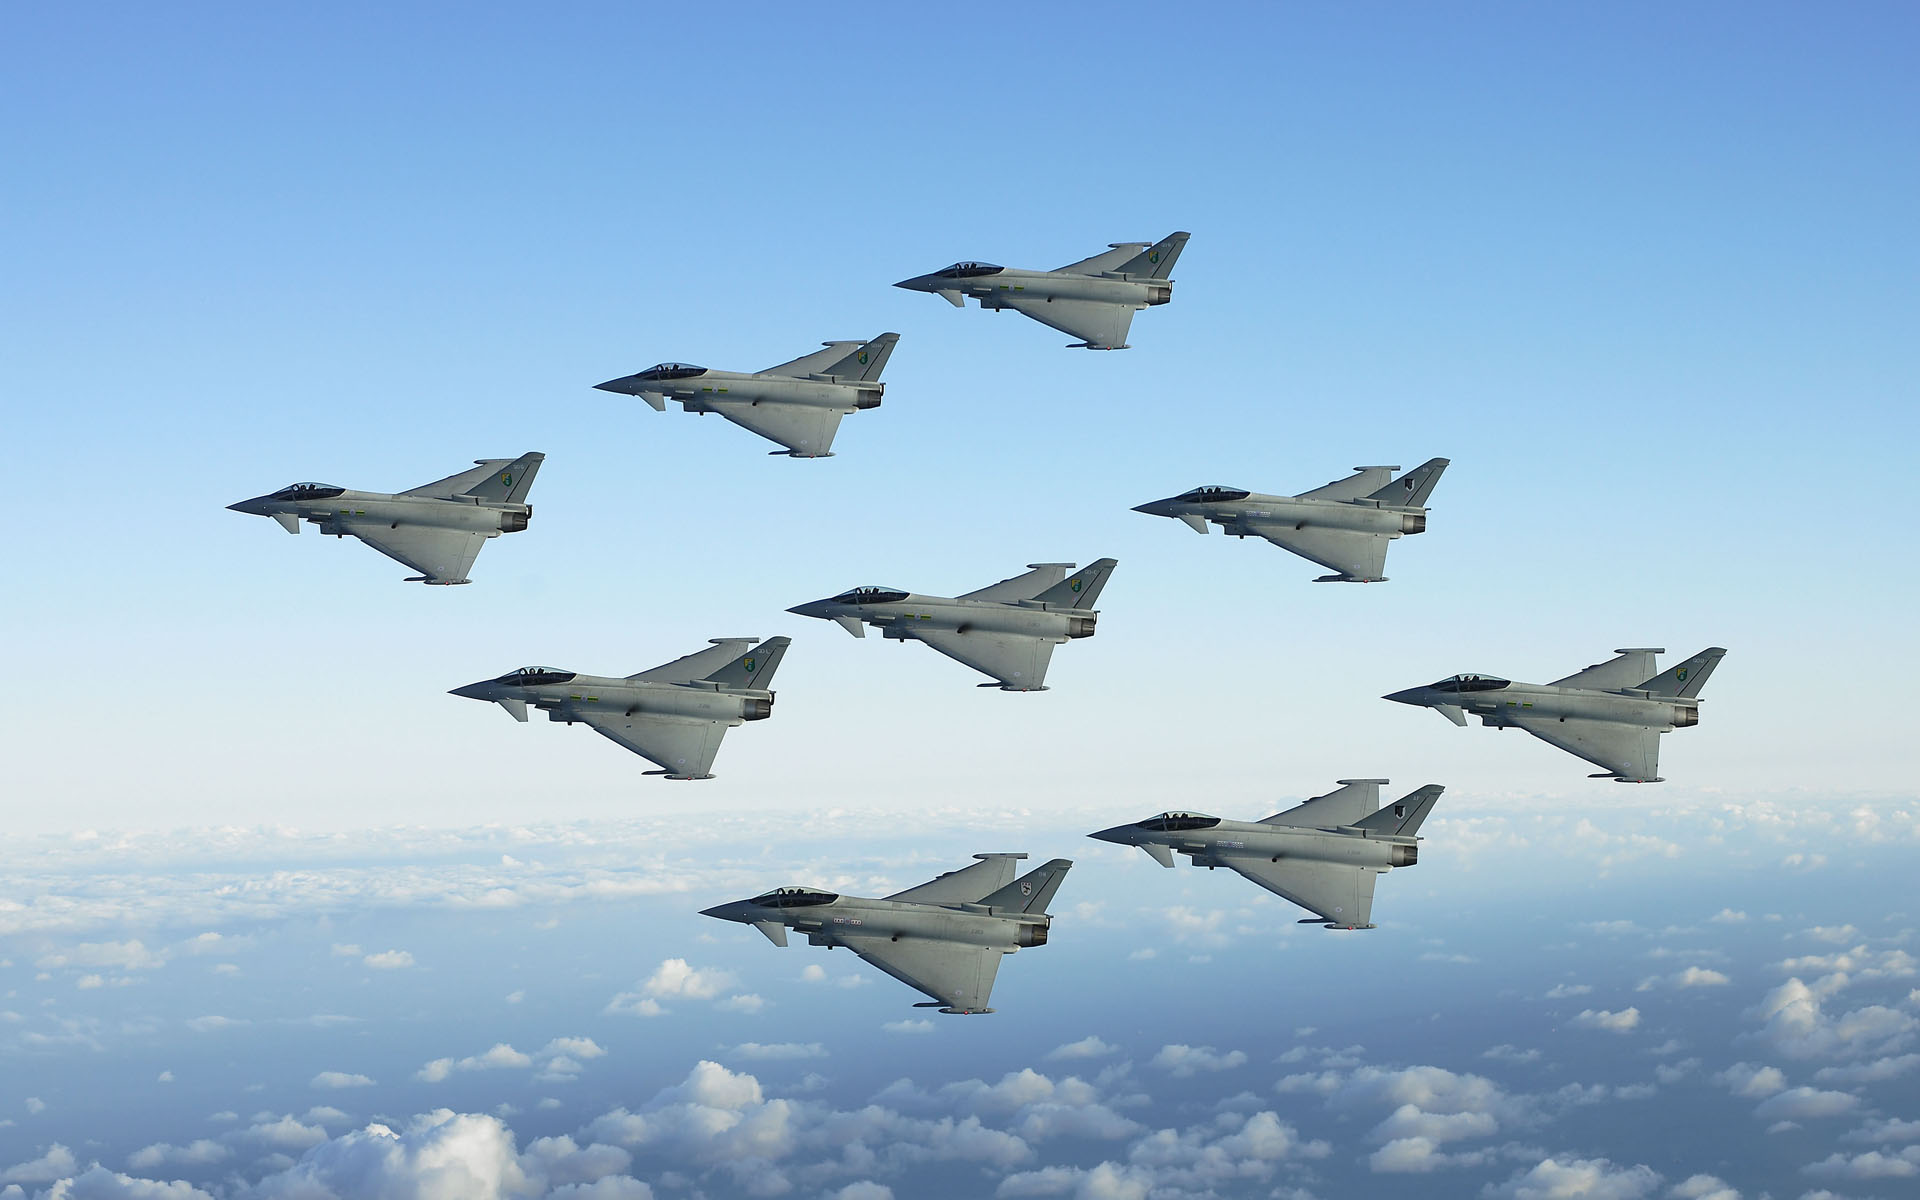 air show, military, aircraft, airplane, eurofighter typhoon, jet fighter, military aircraft